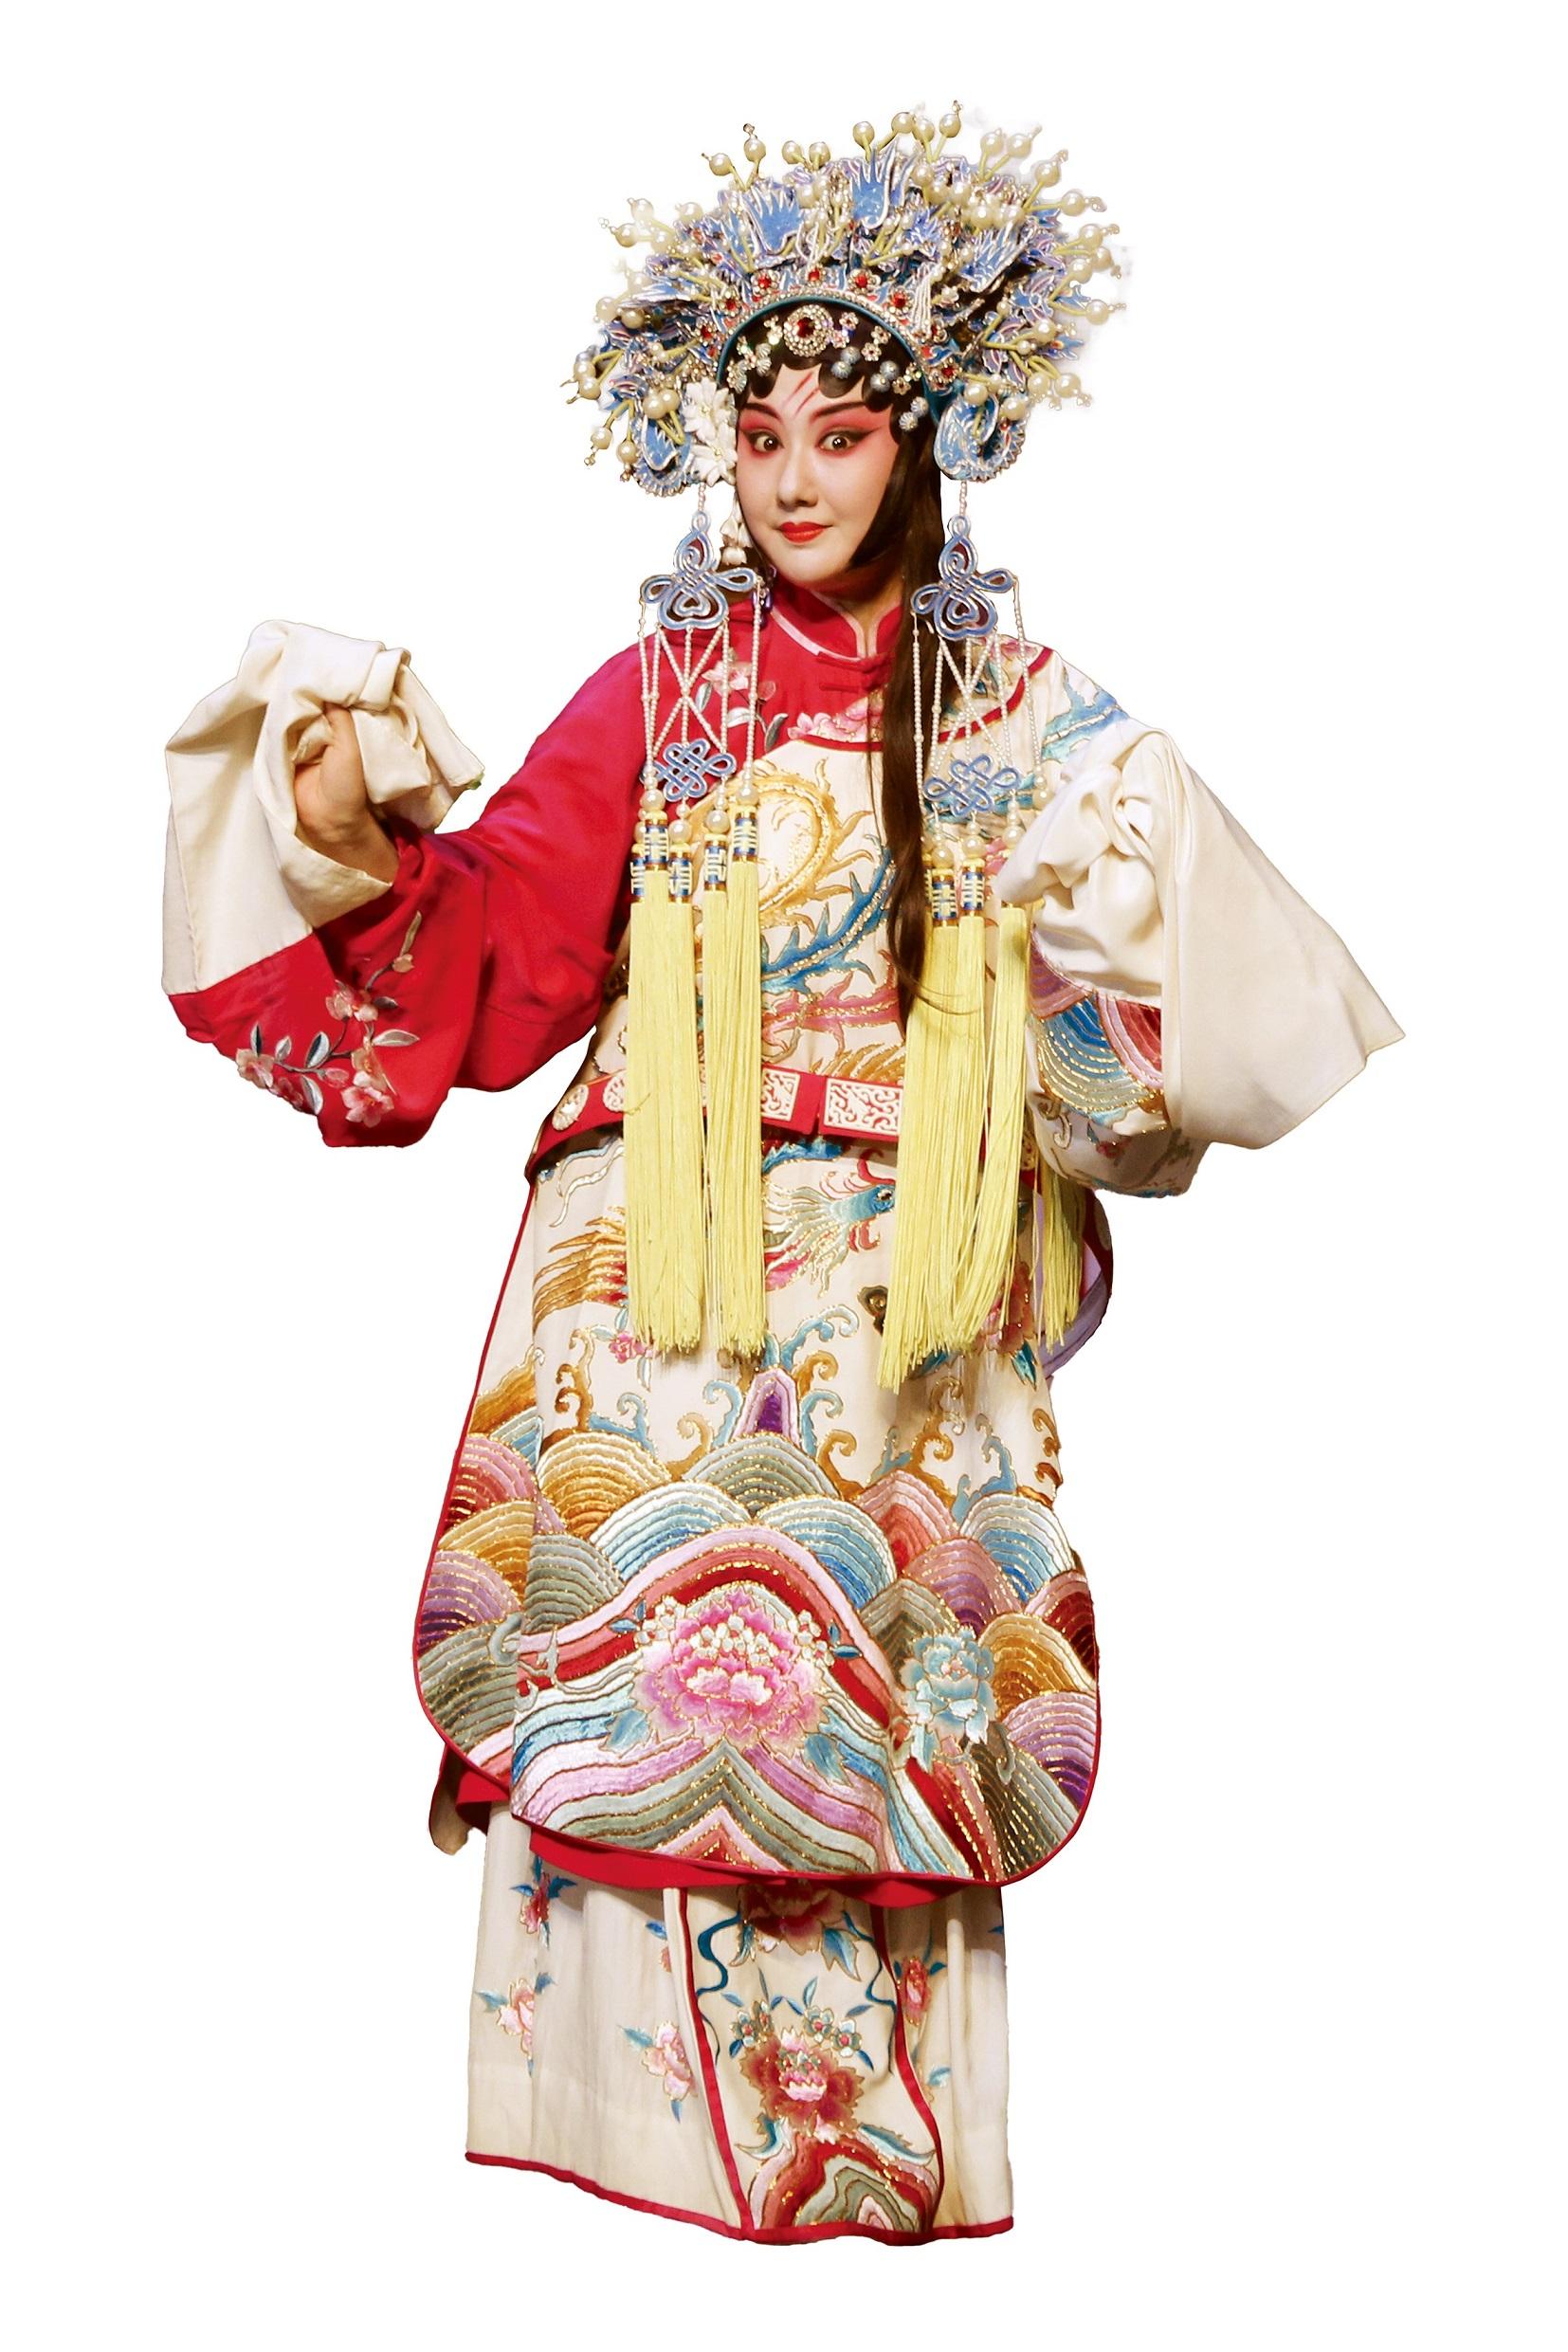 由康乐及文化事务署主办的中国戏曲节（戏曲节）今年于六月至十月期间带来高水平戏曲节目。图为中国戏剧梅花奬得主王荔，她将随武汉汉剧院剧组赴港於戏曲节演出。